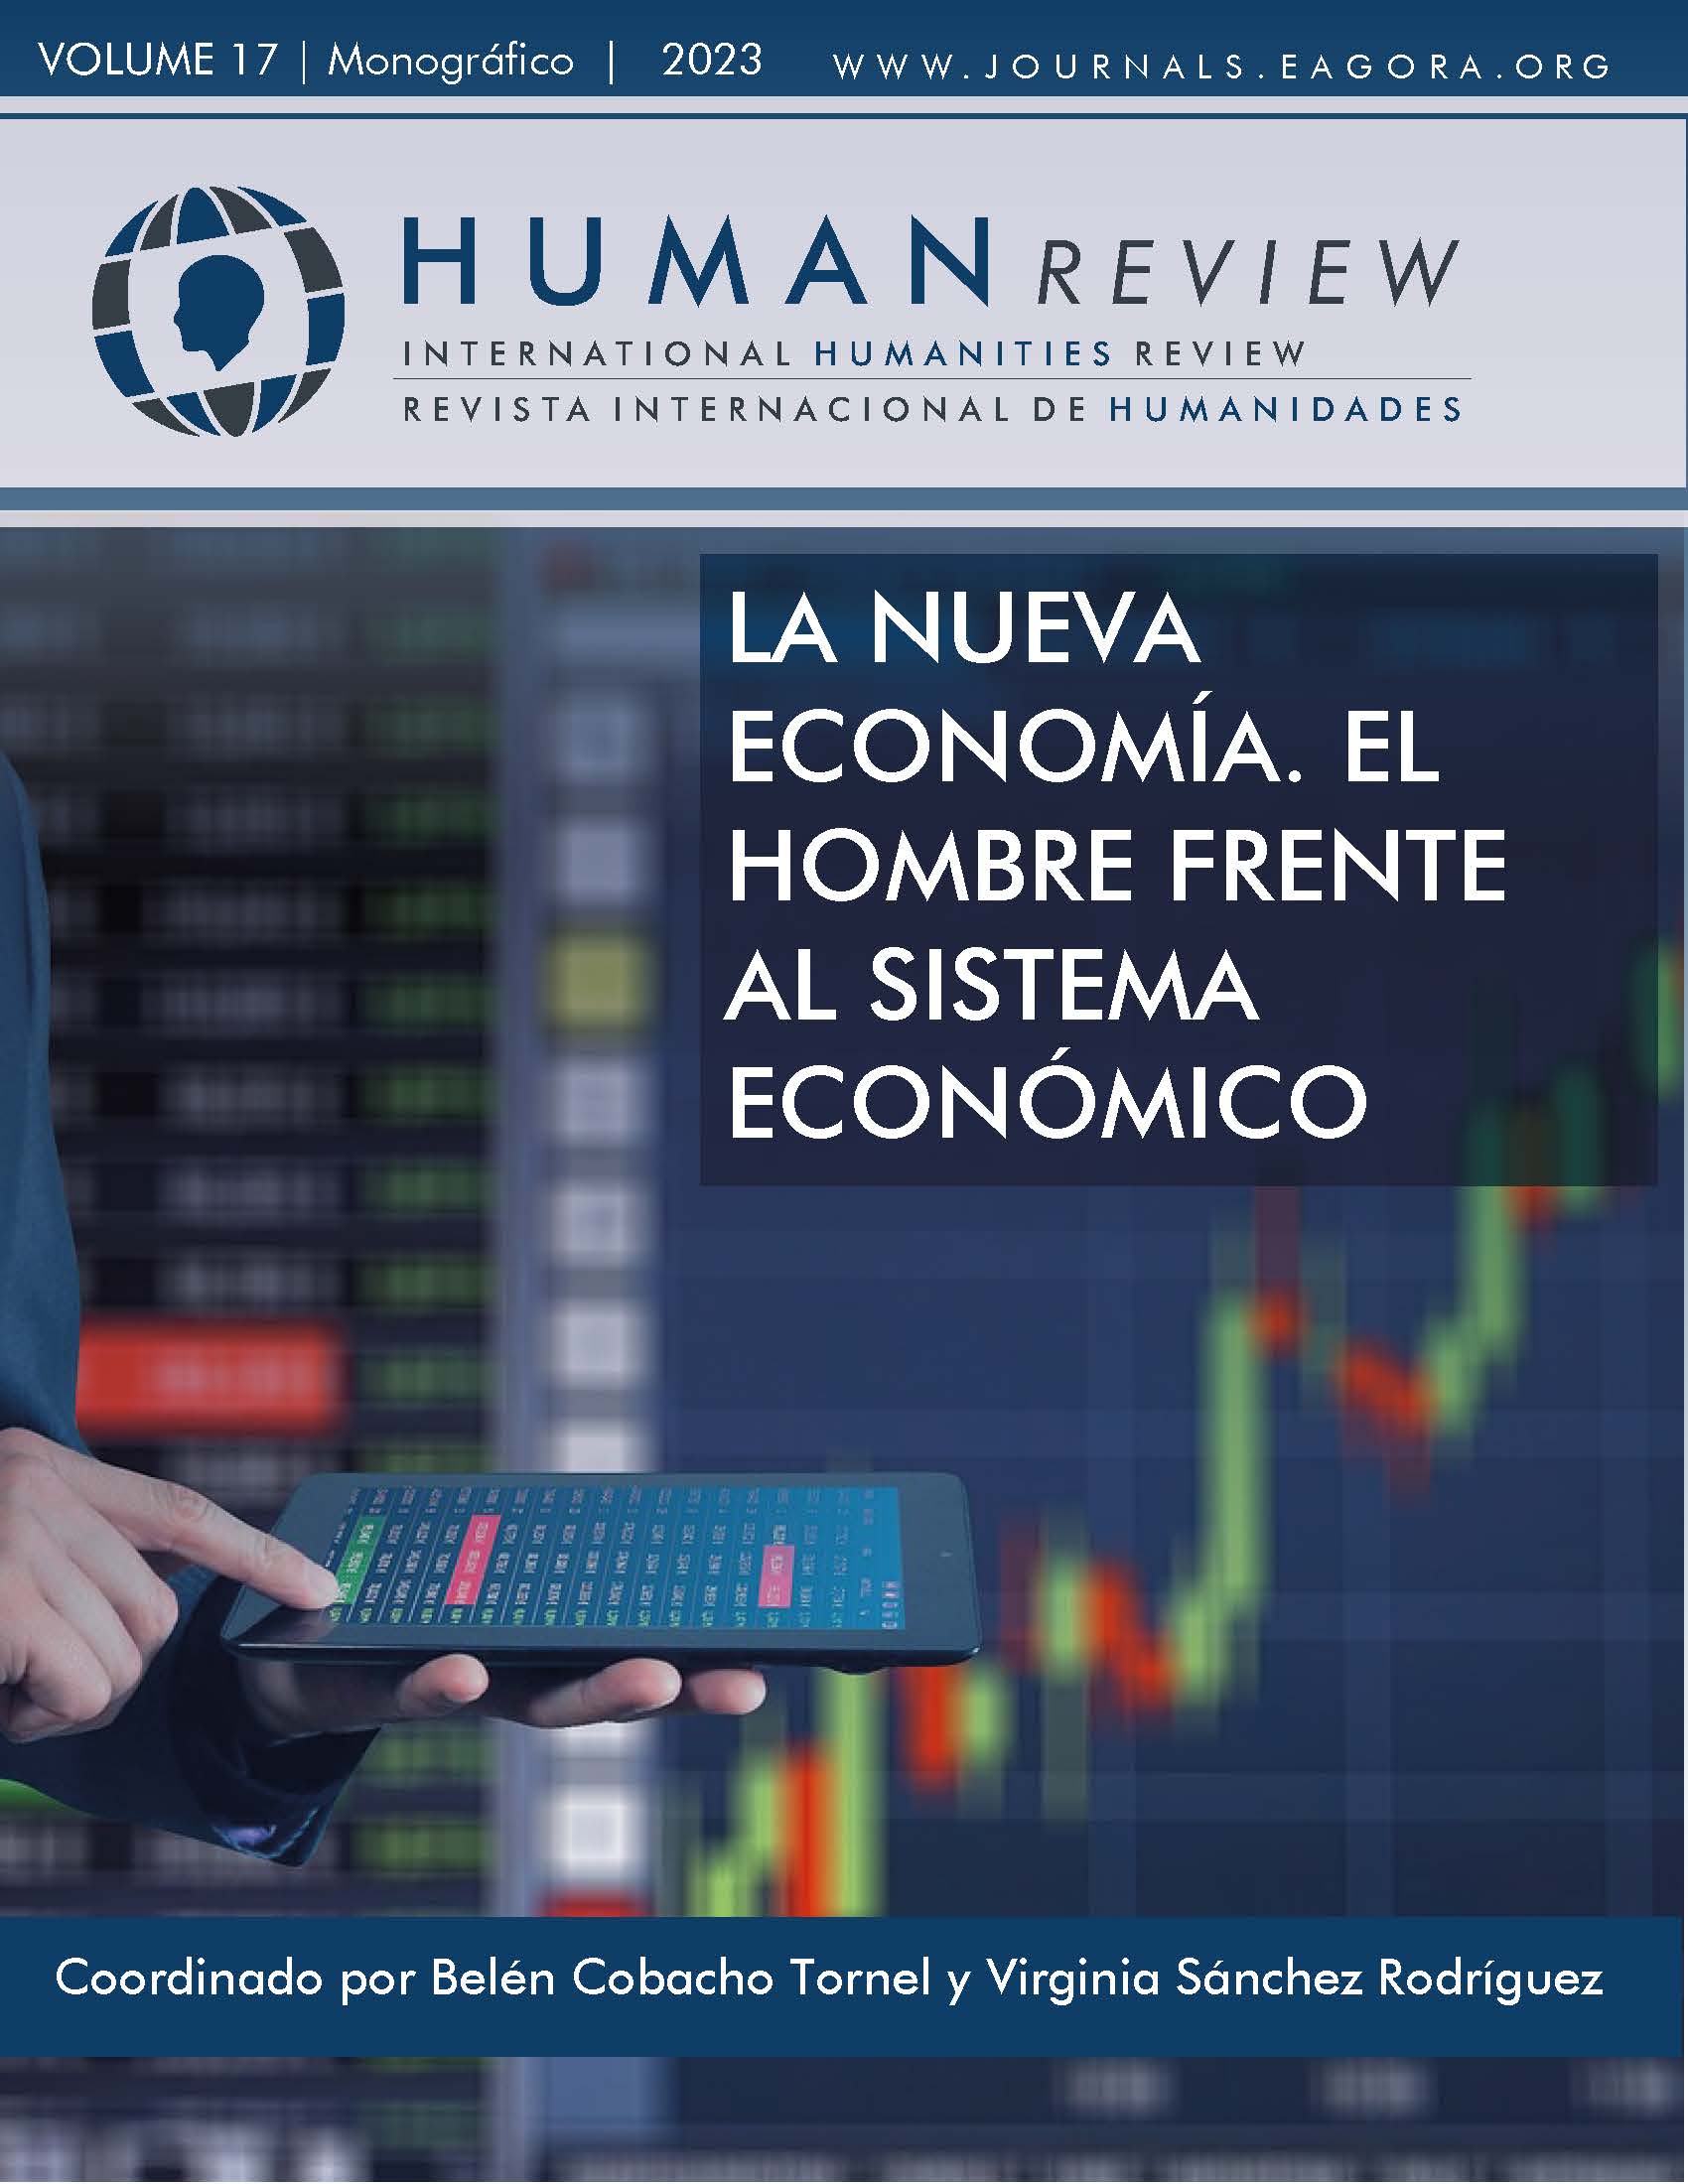 					Ver Vol. 17 Núm. 3 (2023): Monográfico: "La nueva economía. El hombre frente al sistema económico"
				